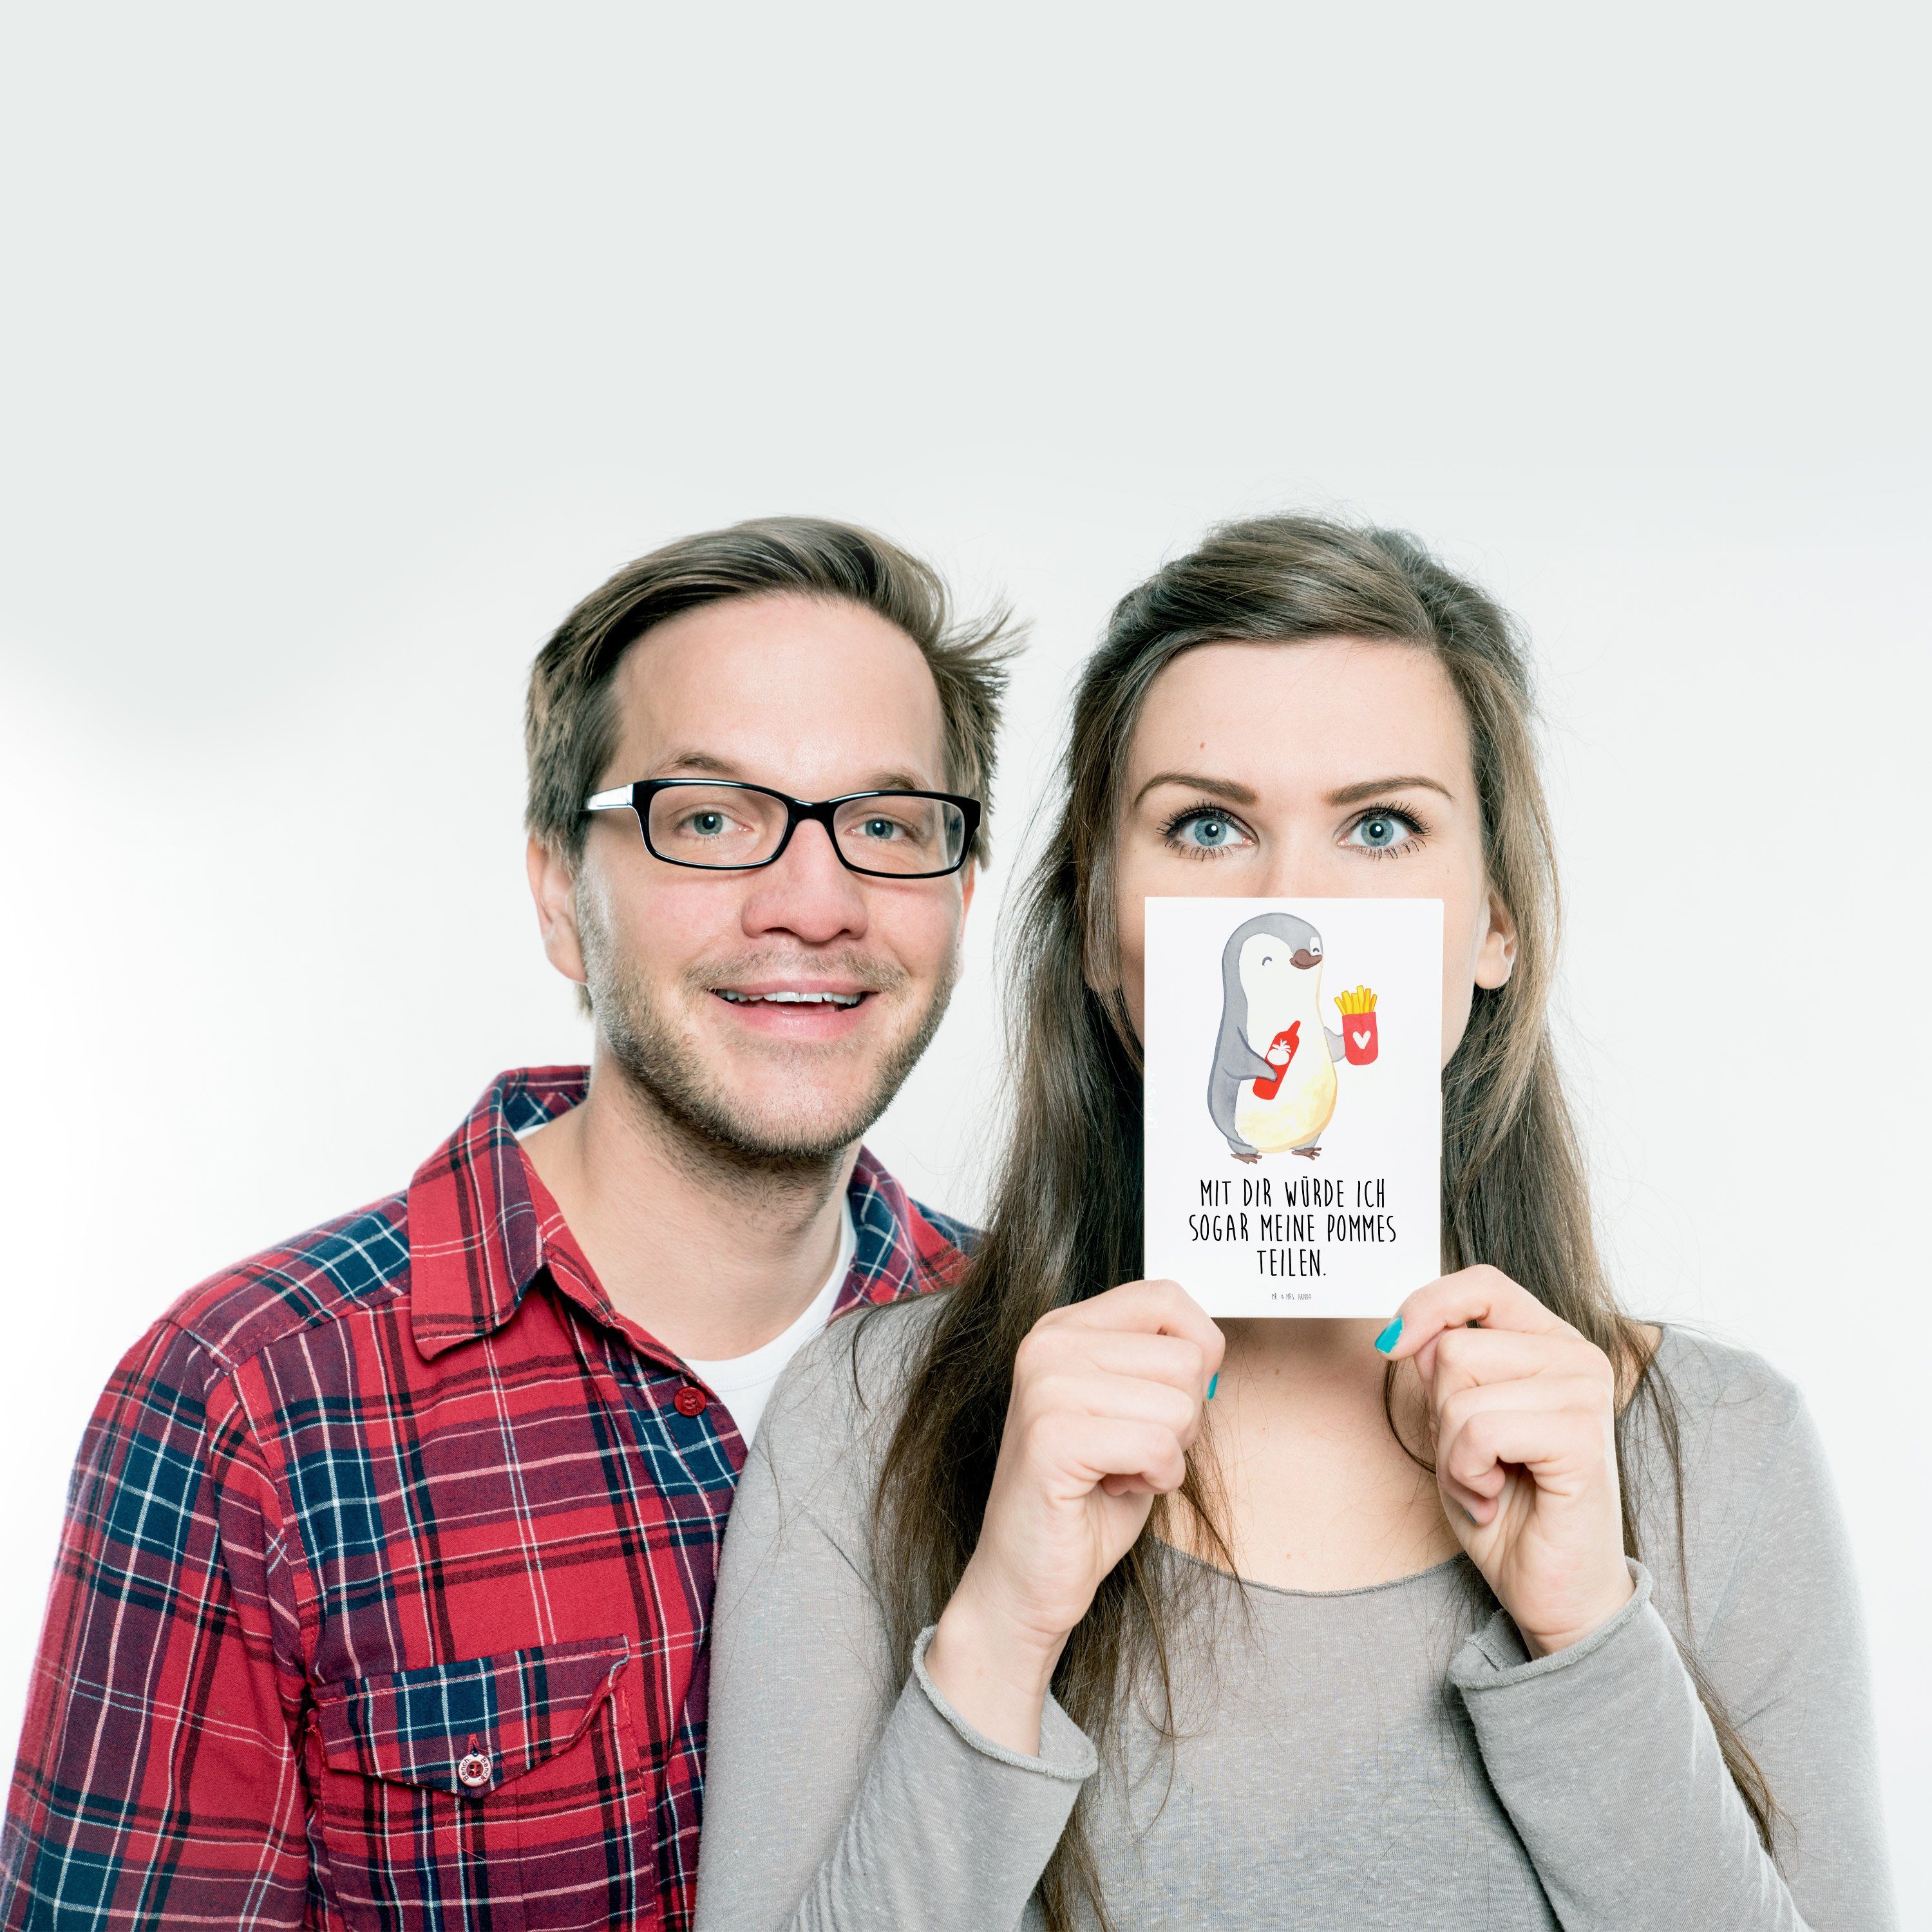 Mr. & Mrs. Panda Postkarte - Pommes Geschenk Weiß Geburtstagskarte, Ehemann, - Pinguin Geschenk